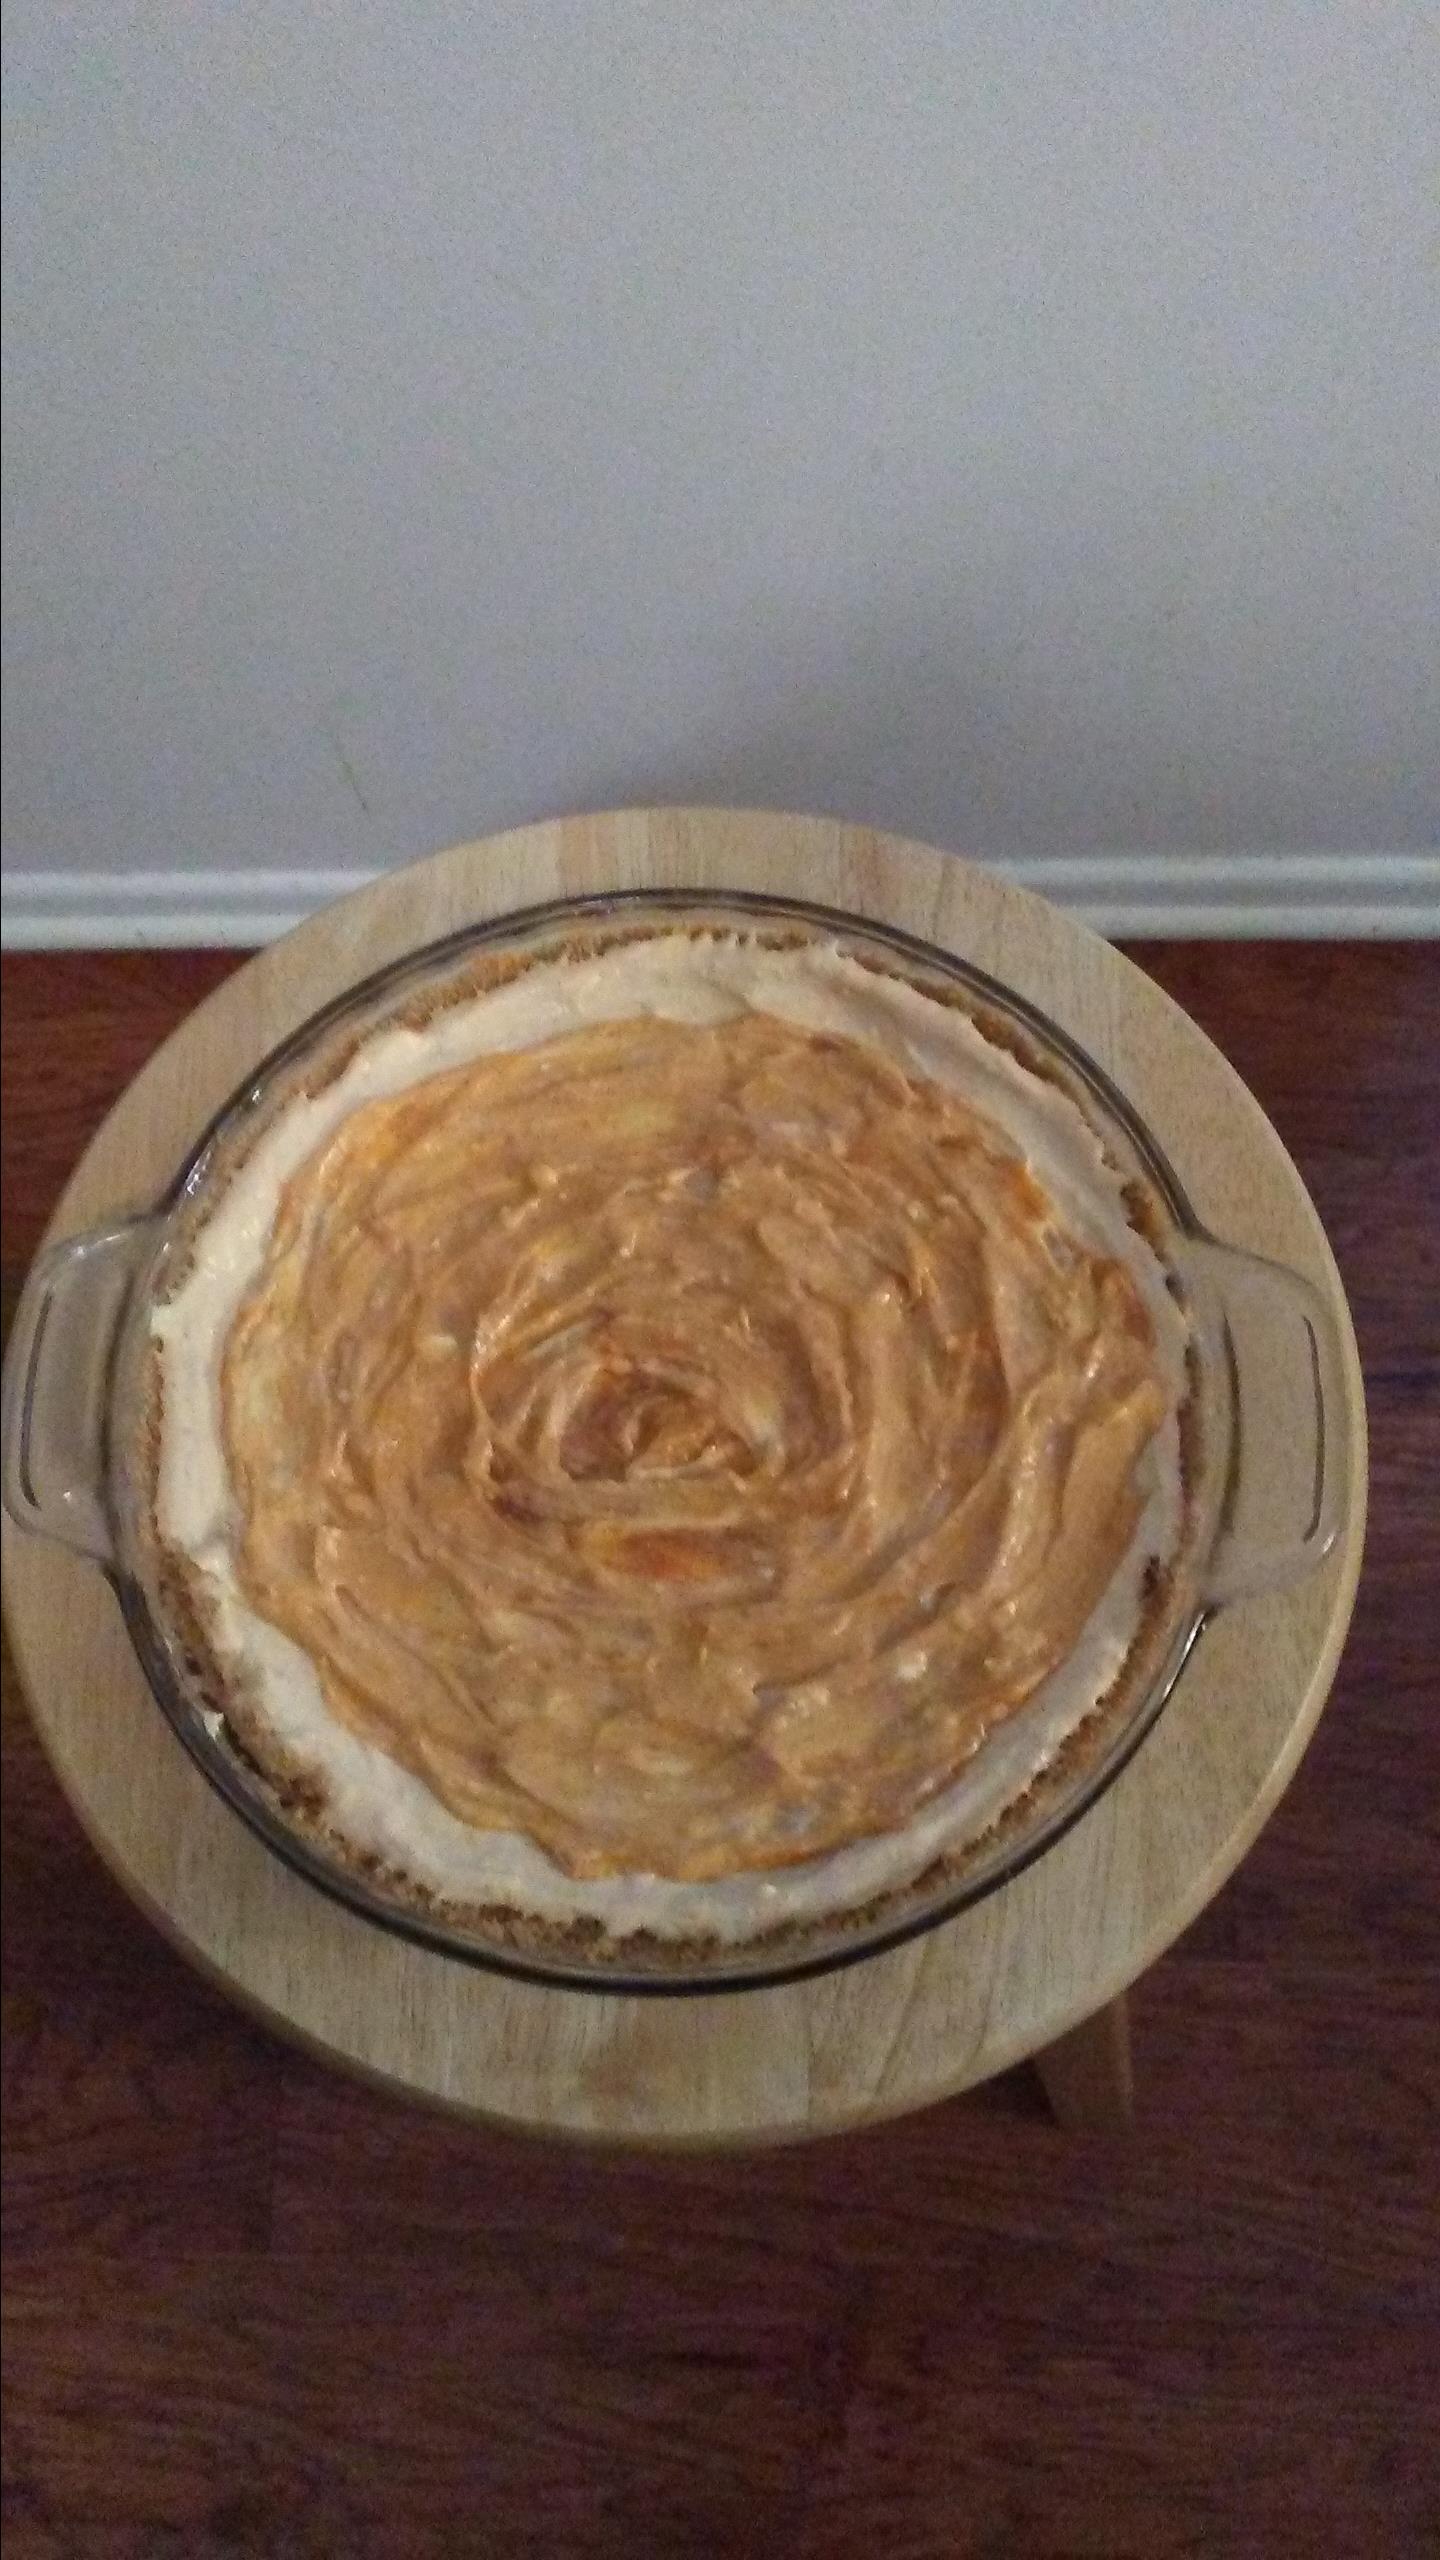 No-Bake Pumpkin Pie with Cream Cheese